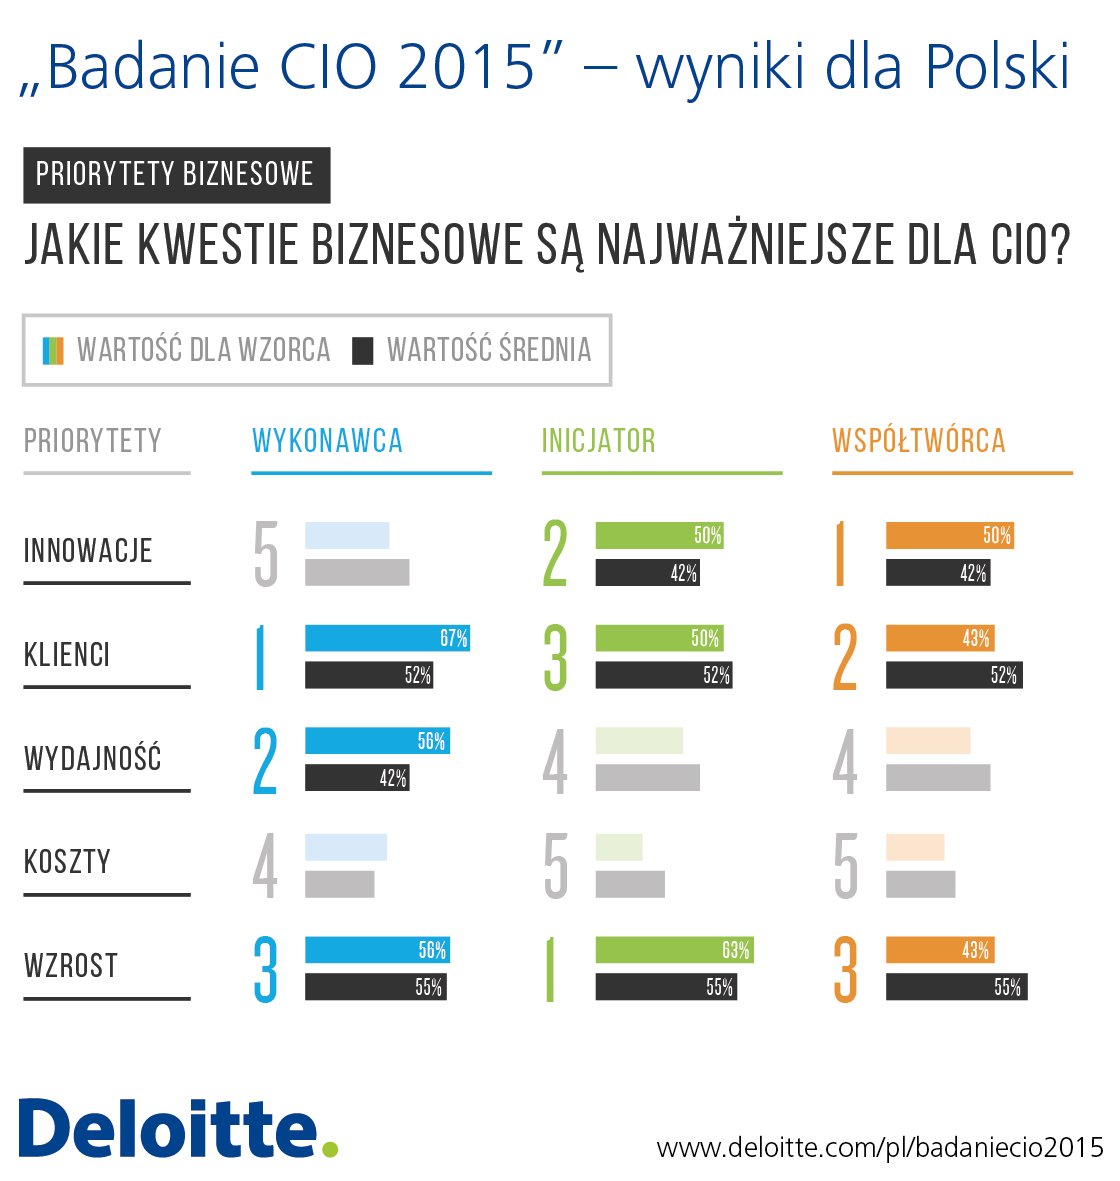 Jedna piąta budżetów IT w polskich firmach przeznaczana jest na innowacje